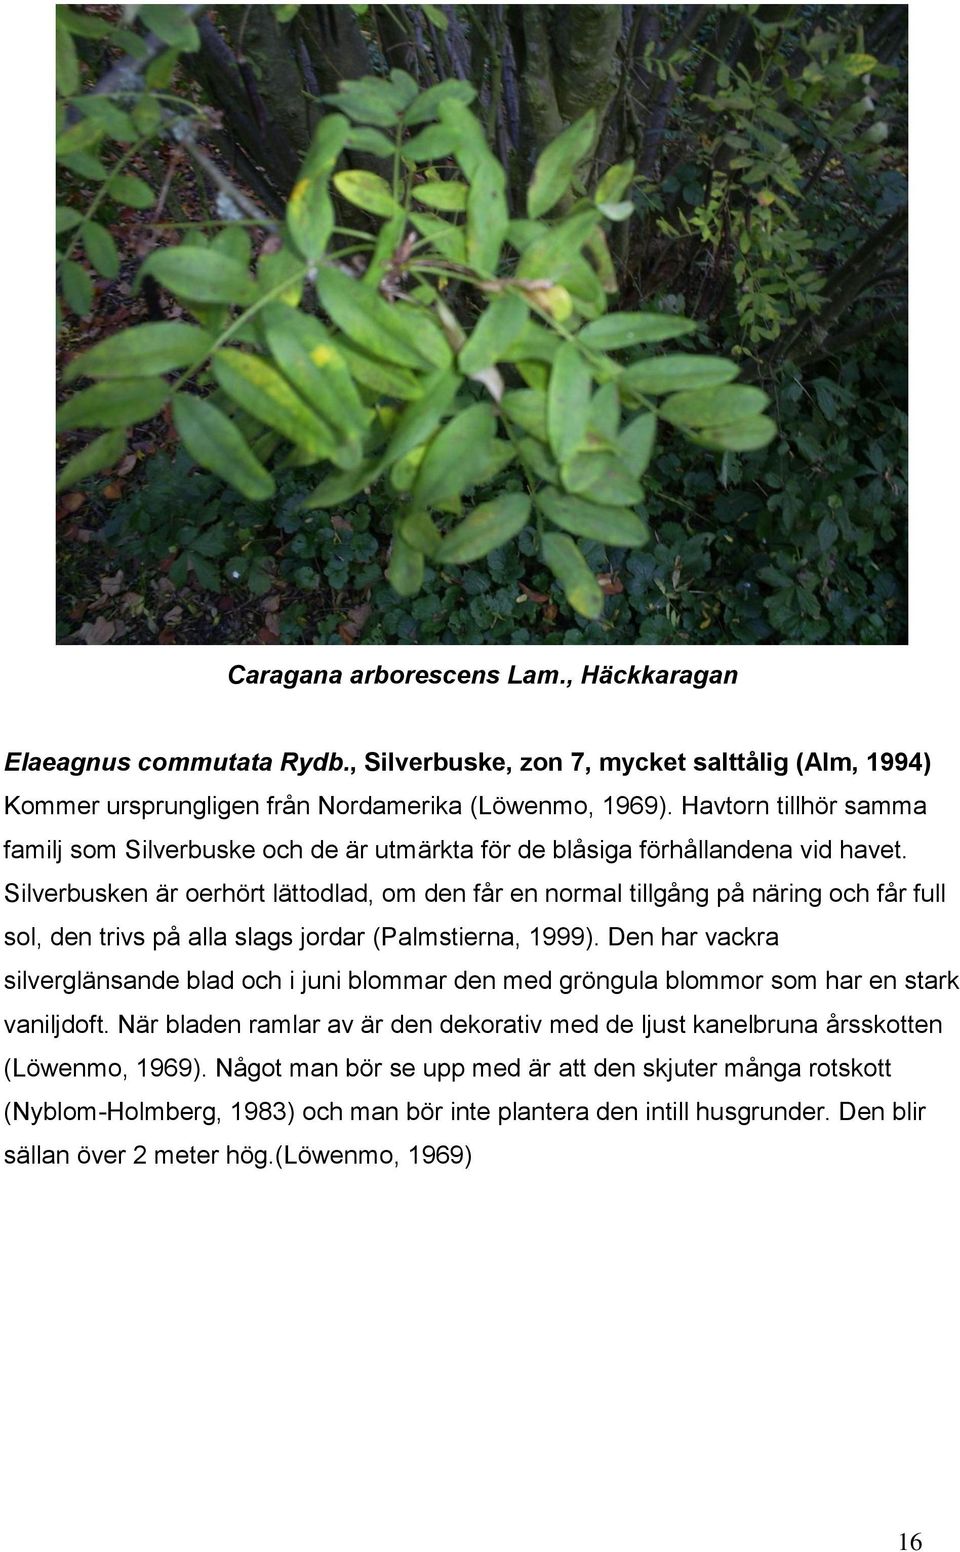 Silverbusken är oerhört lättodlad, om den får en normal tillgång på näring och får full sol, den trivs på alla slags jordar (Palmstierna, 1999).